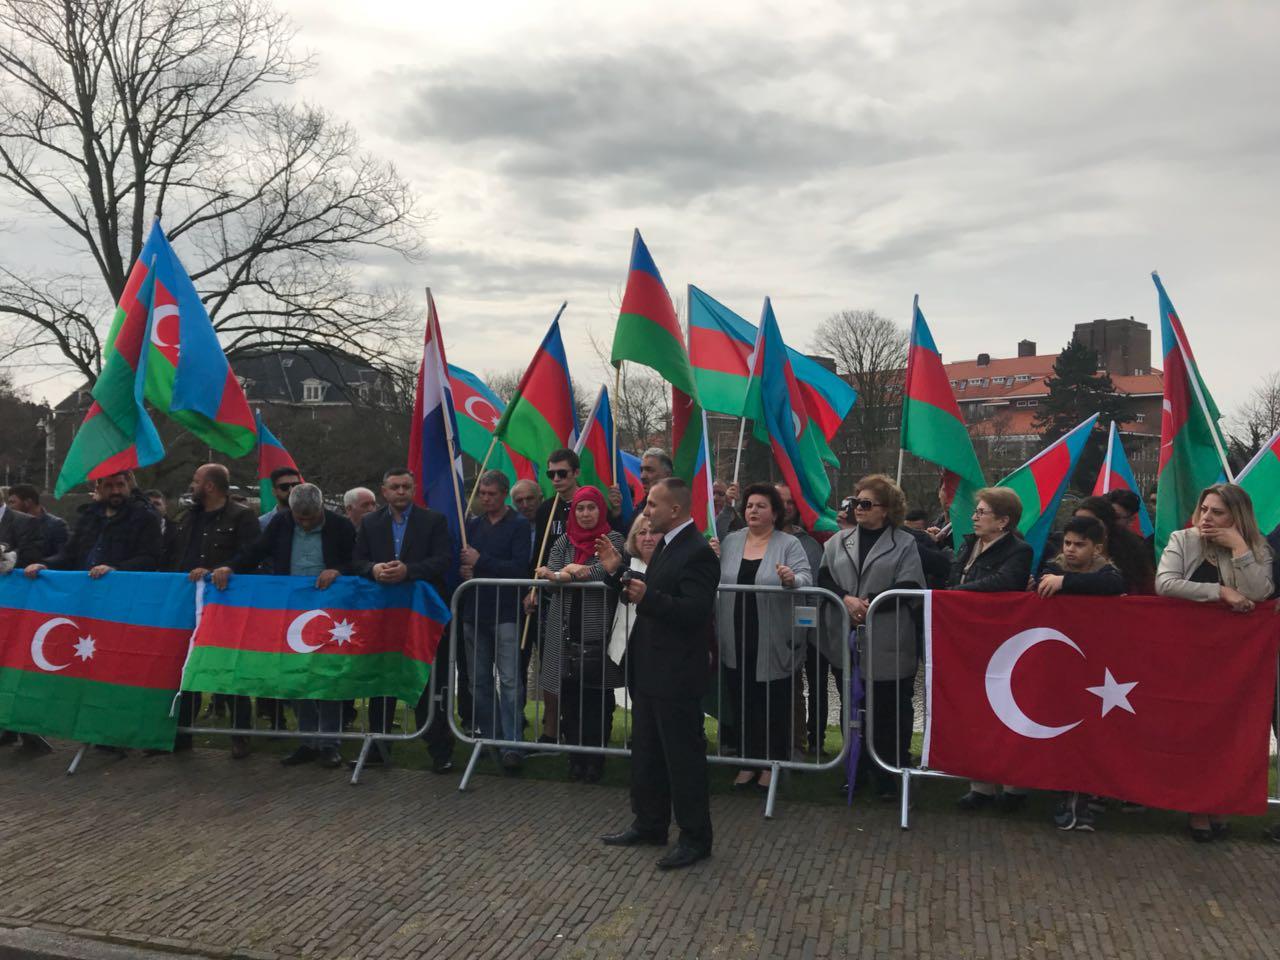 В Гааге прошла акция солидарности азербайджанцев (ФОТО)